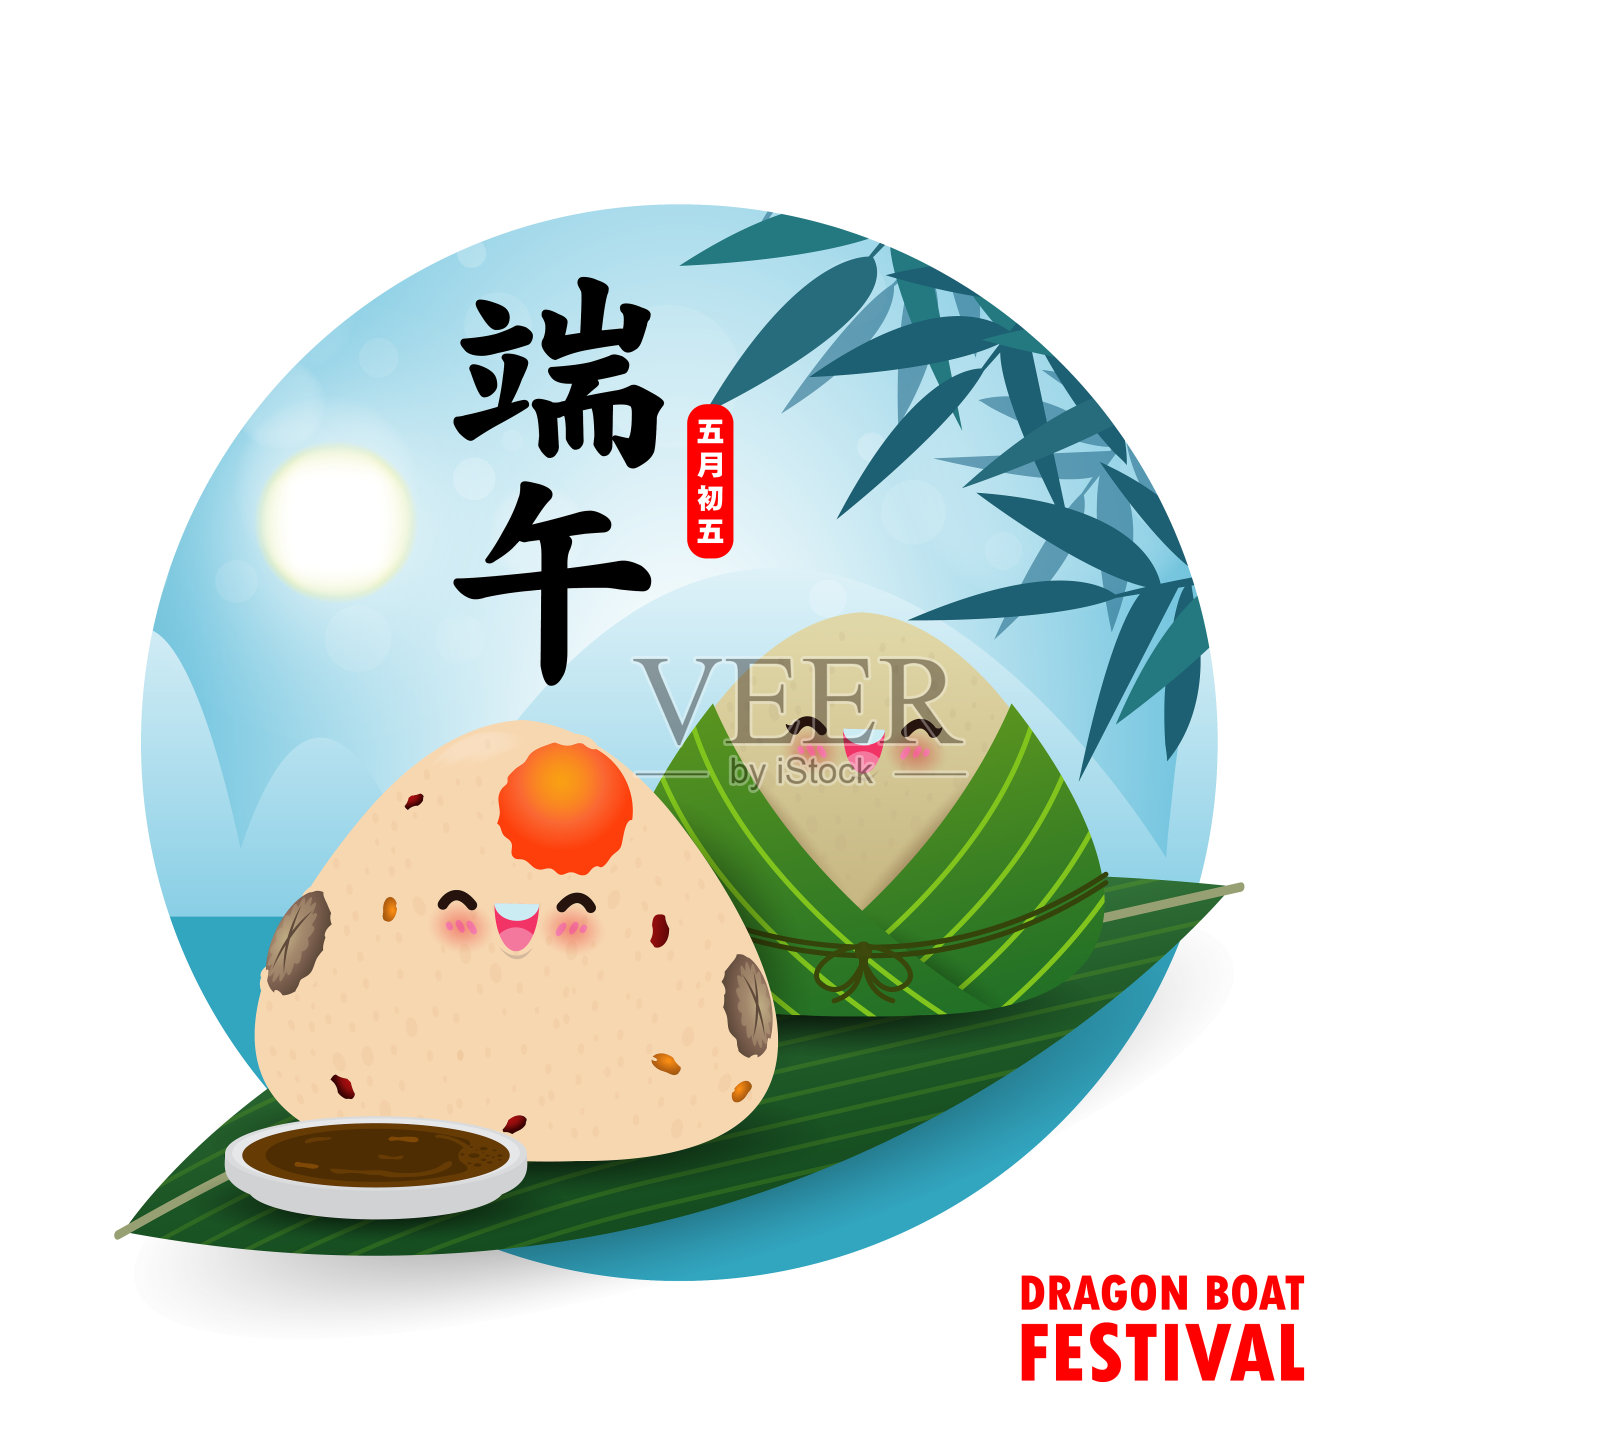 以中国龙舟竞渡节粽子、可爱汉字设计的欢乐端午贺卡为背景矢量插图。端午节，五月初五设计模板素材